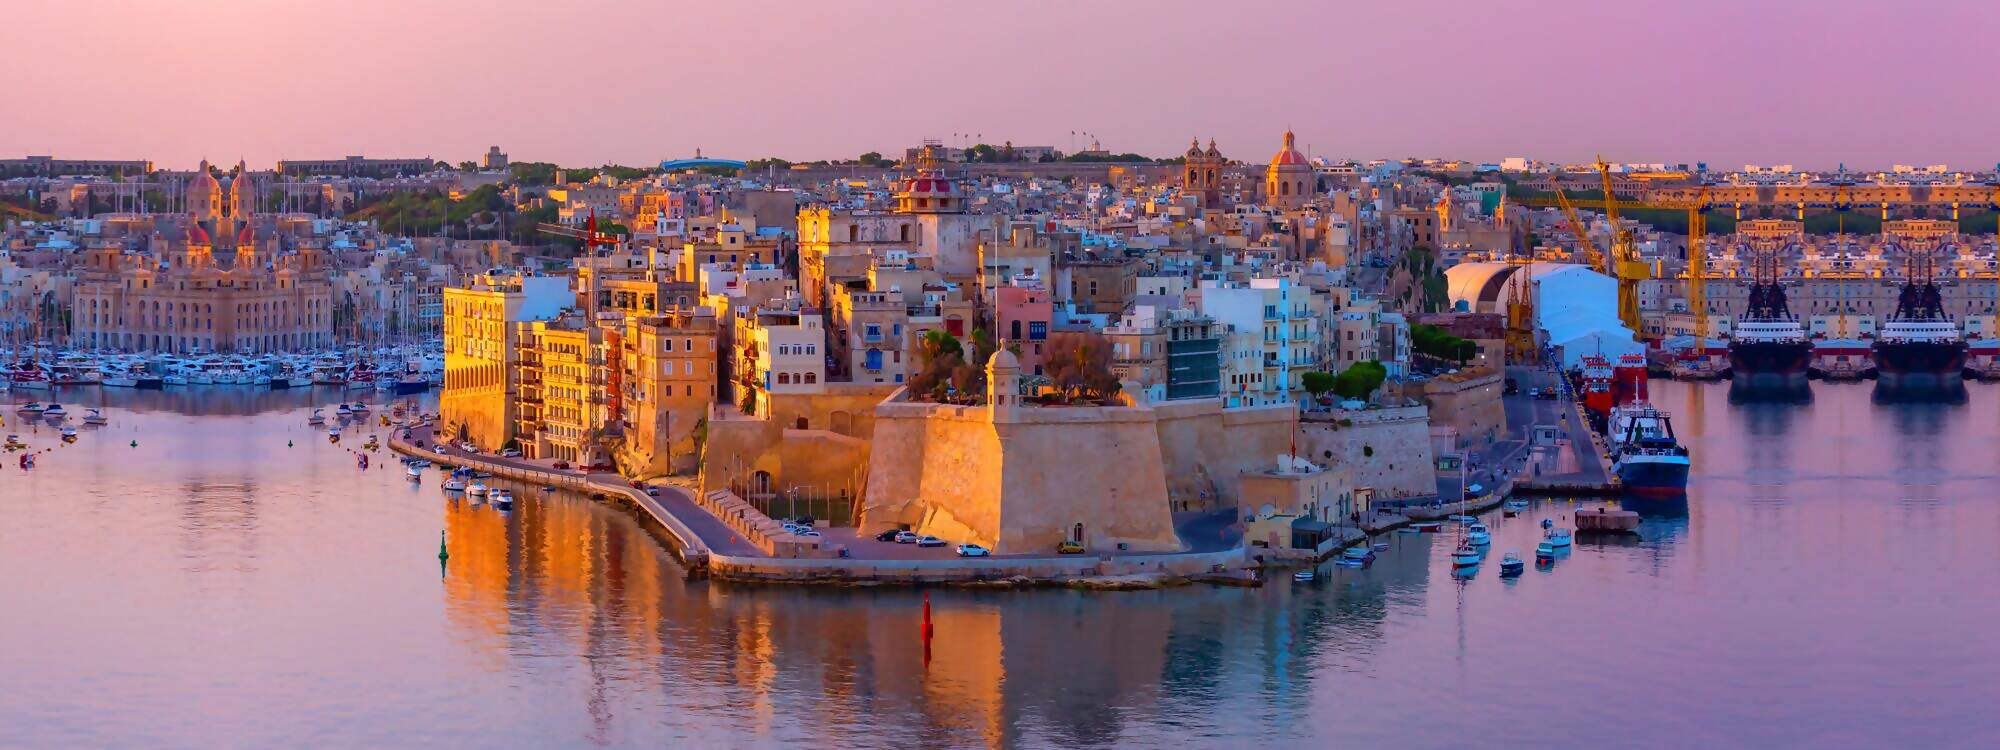 Festung St. Michael und der Hafen Valletta auf der Halbinsel Senglea - Malta